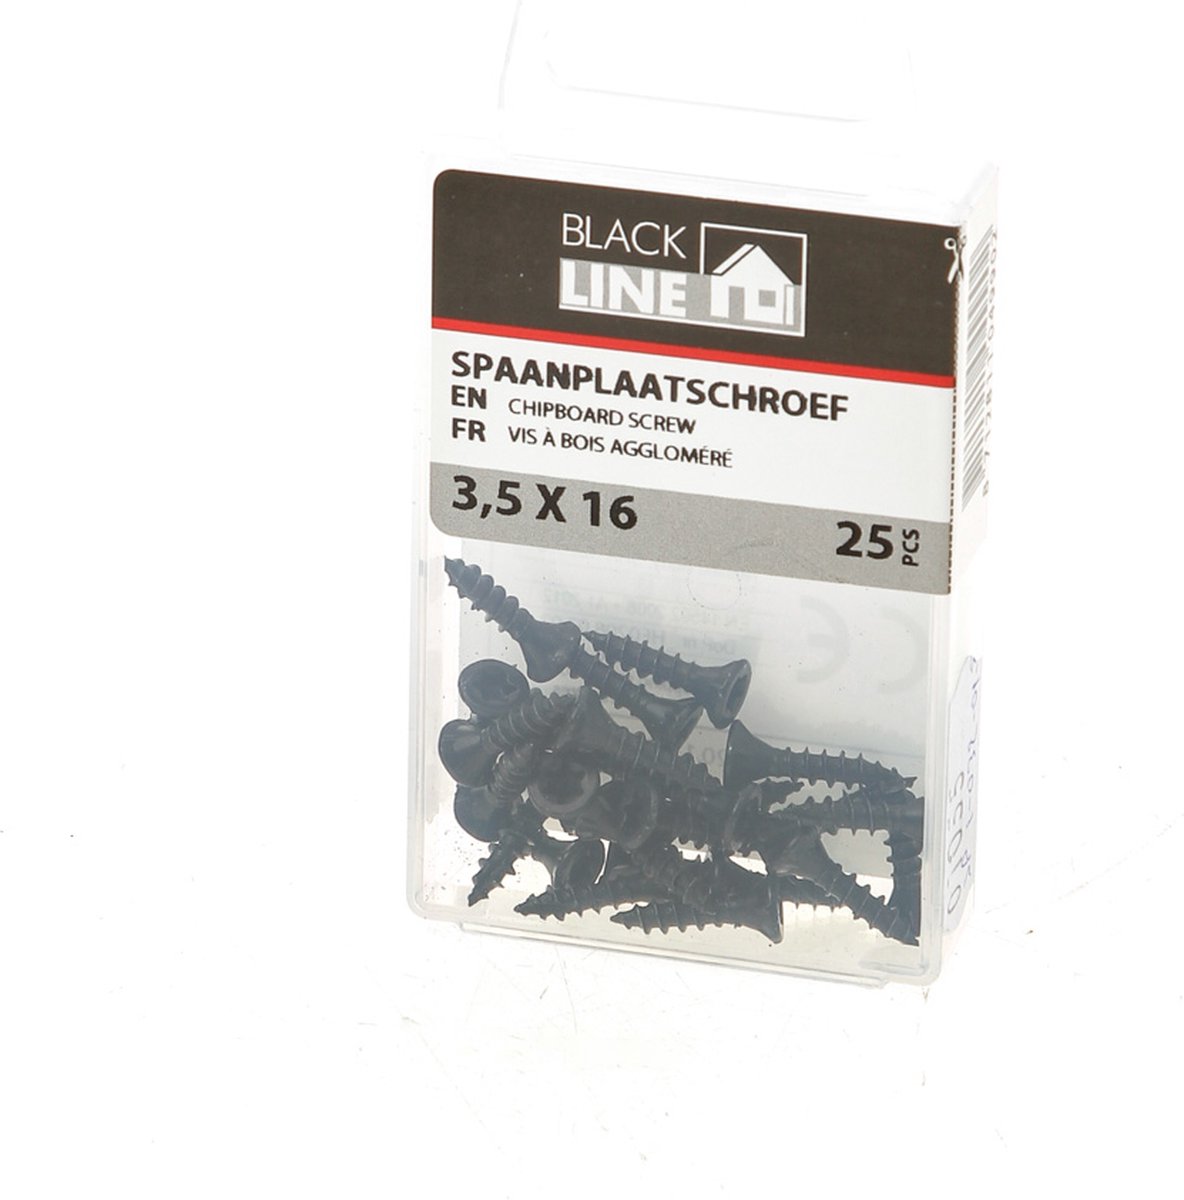 Spaanplaatschroef 3,5 x 16 mm - zwart (25 stuks)